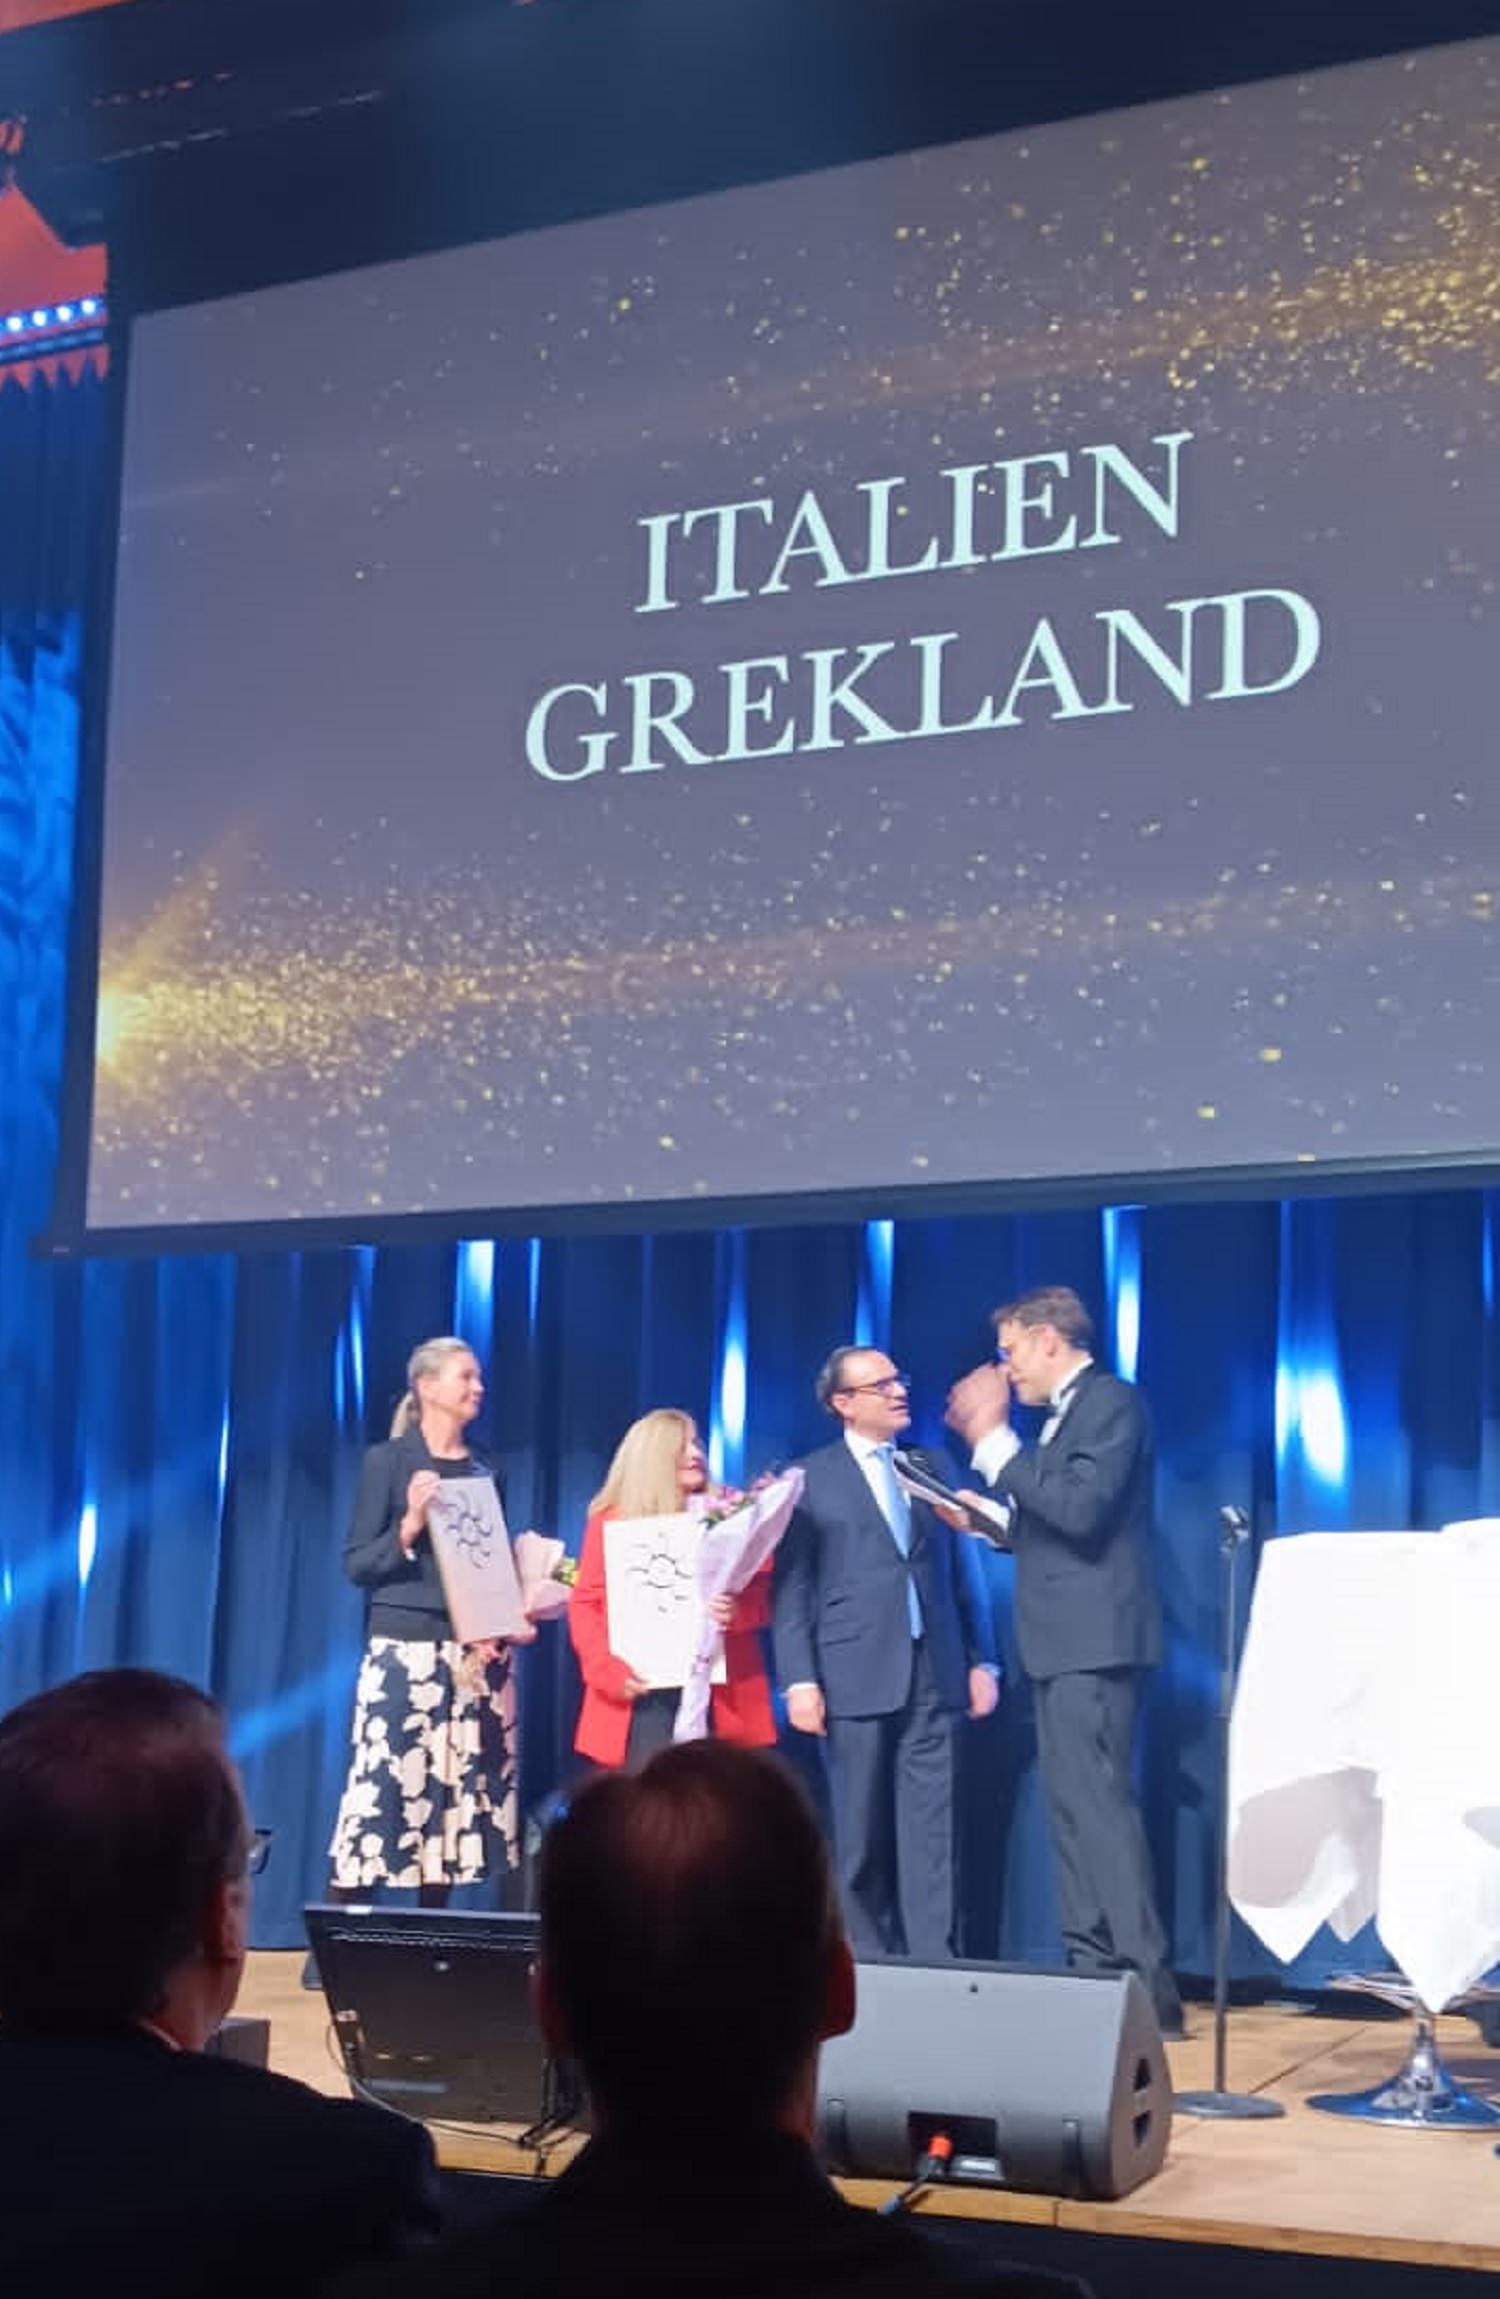 Η Ελλάδα κορυφαίος τουριστικός προορισμός παγκοσμίως στα βραβεία GTA Σουηδίας